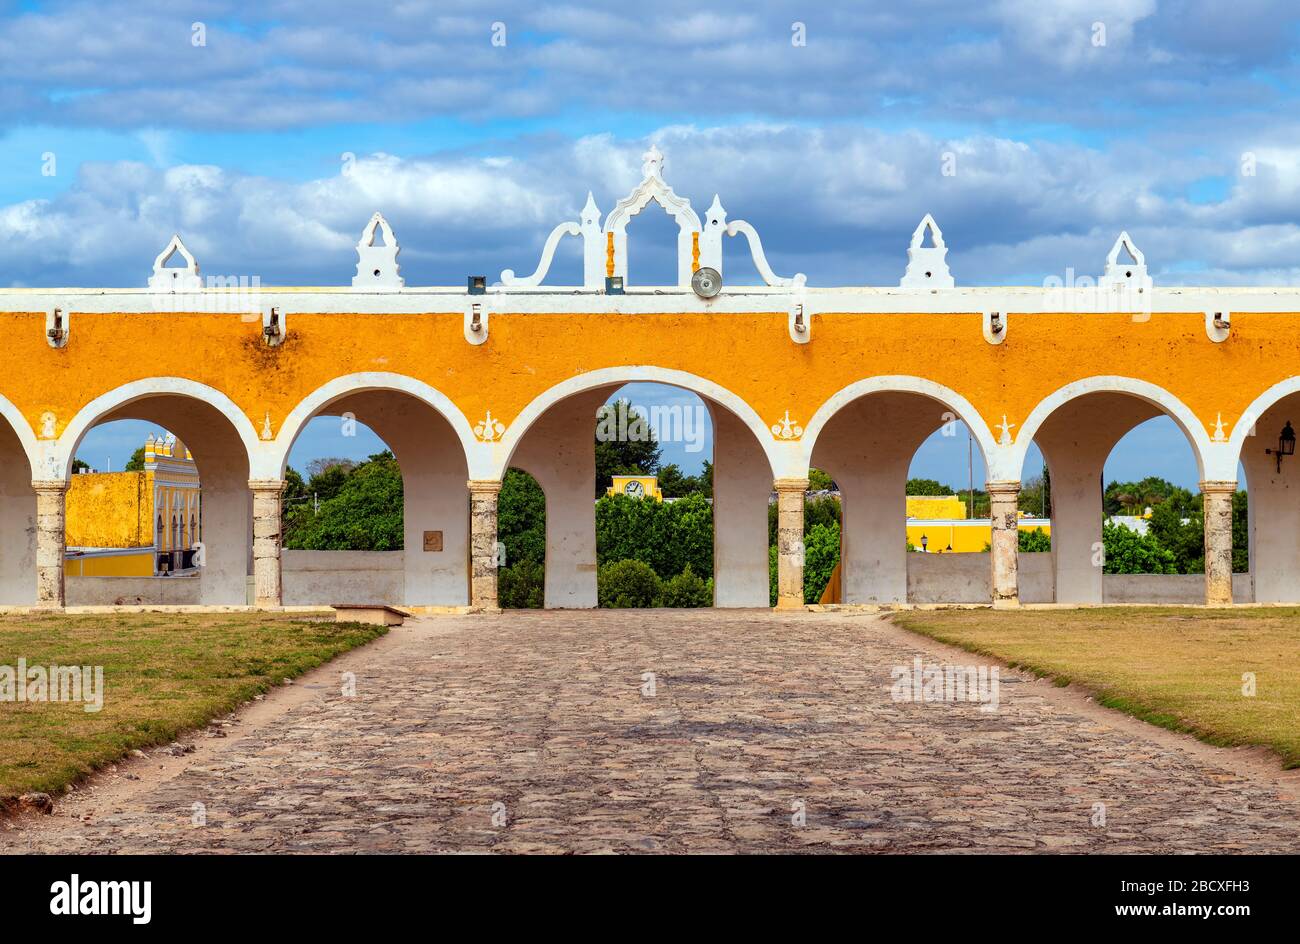 Les arches jaunes colorées du couvent franciscain à Izamal près de Mérida et Cancun, péninsule du Yucatan, Mexique. Banque D'Images